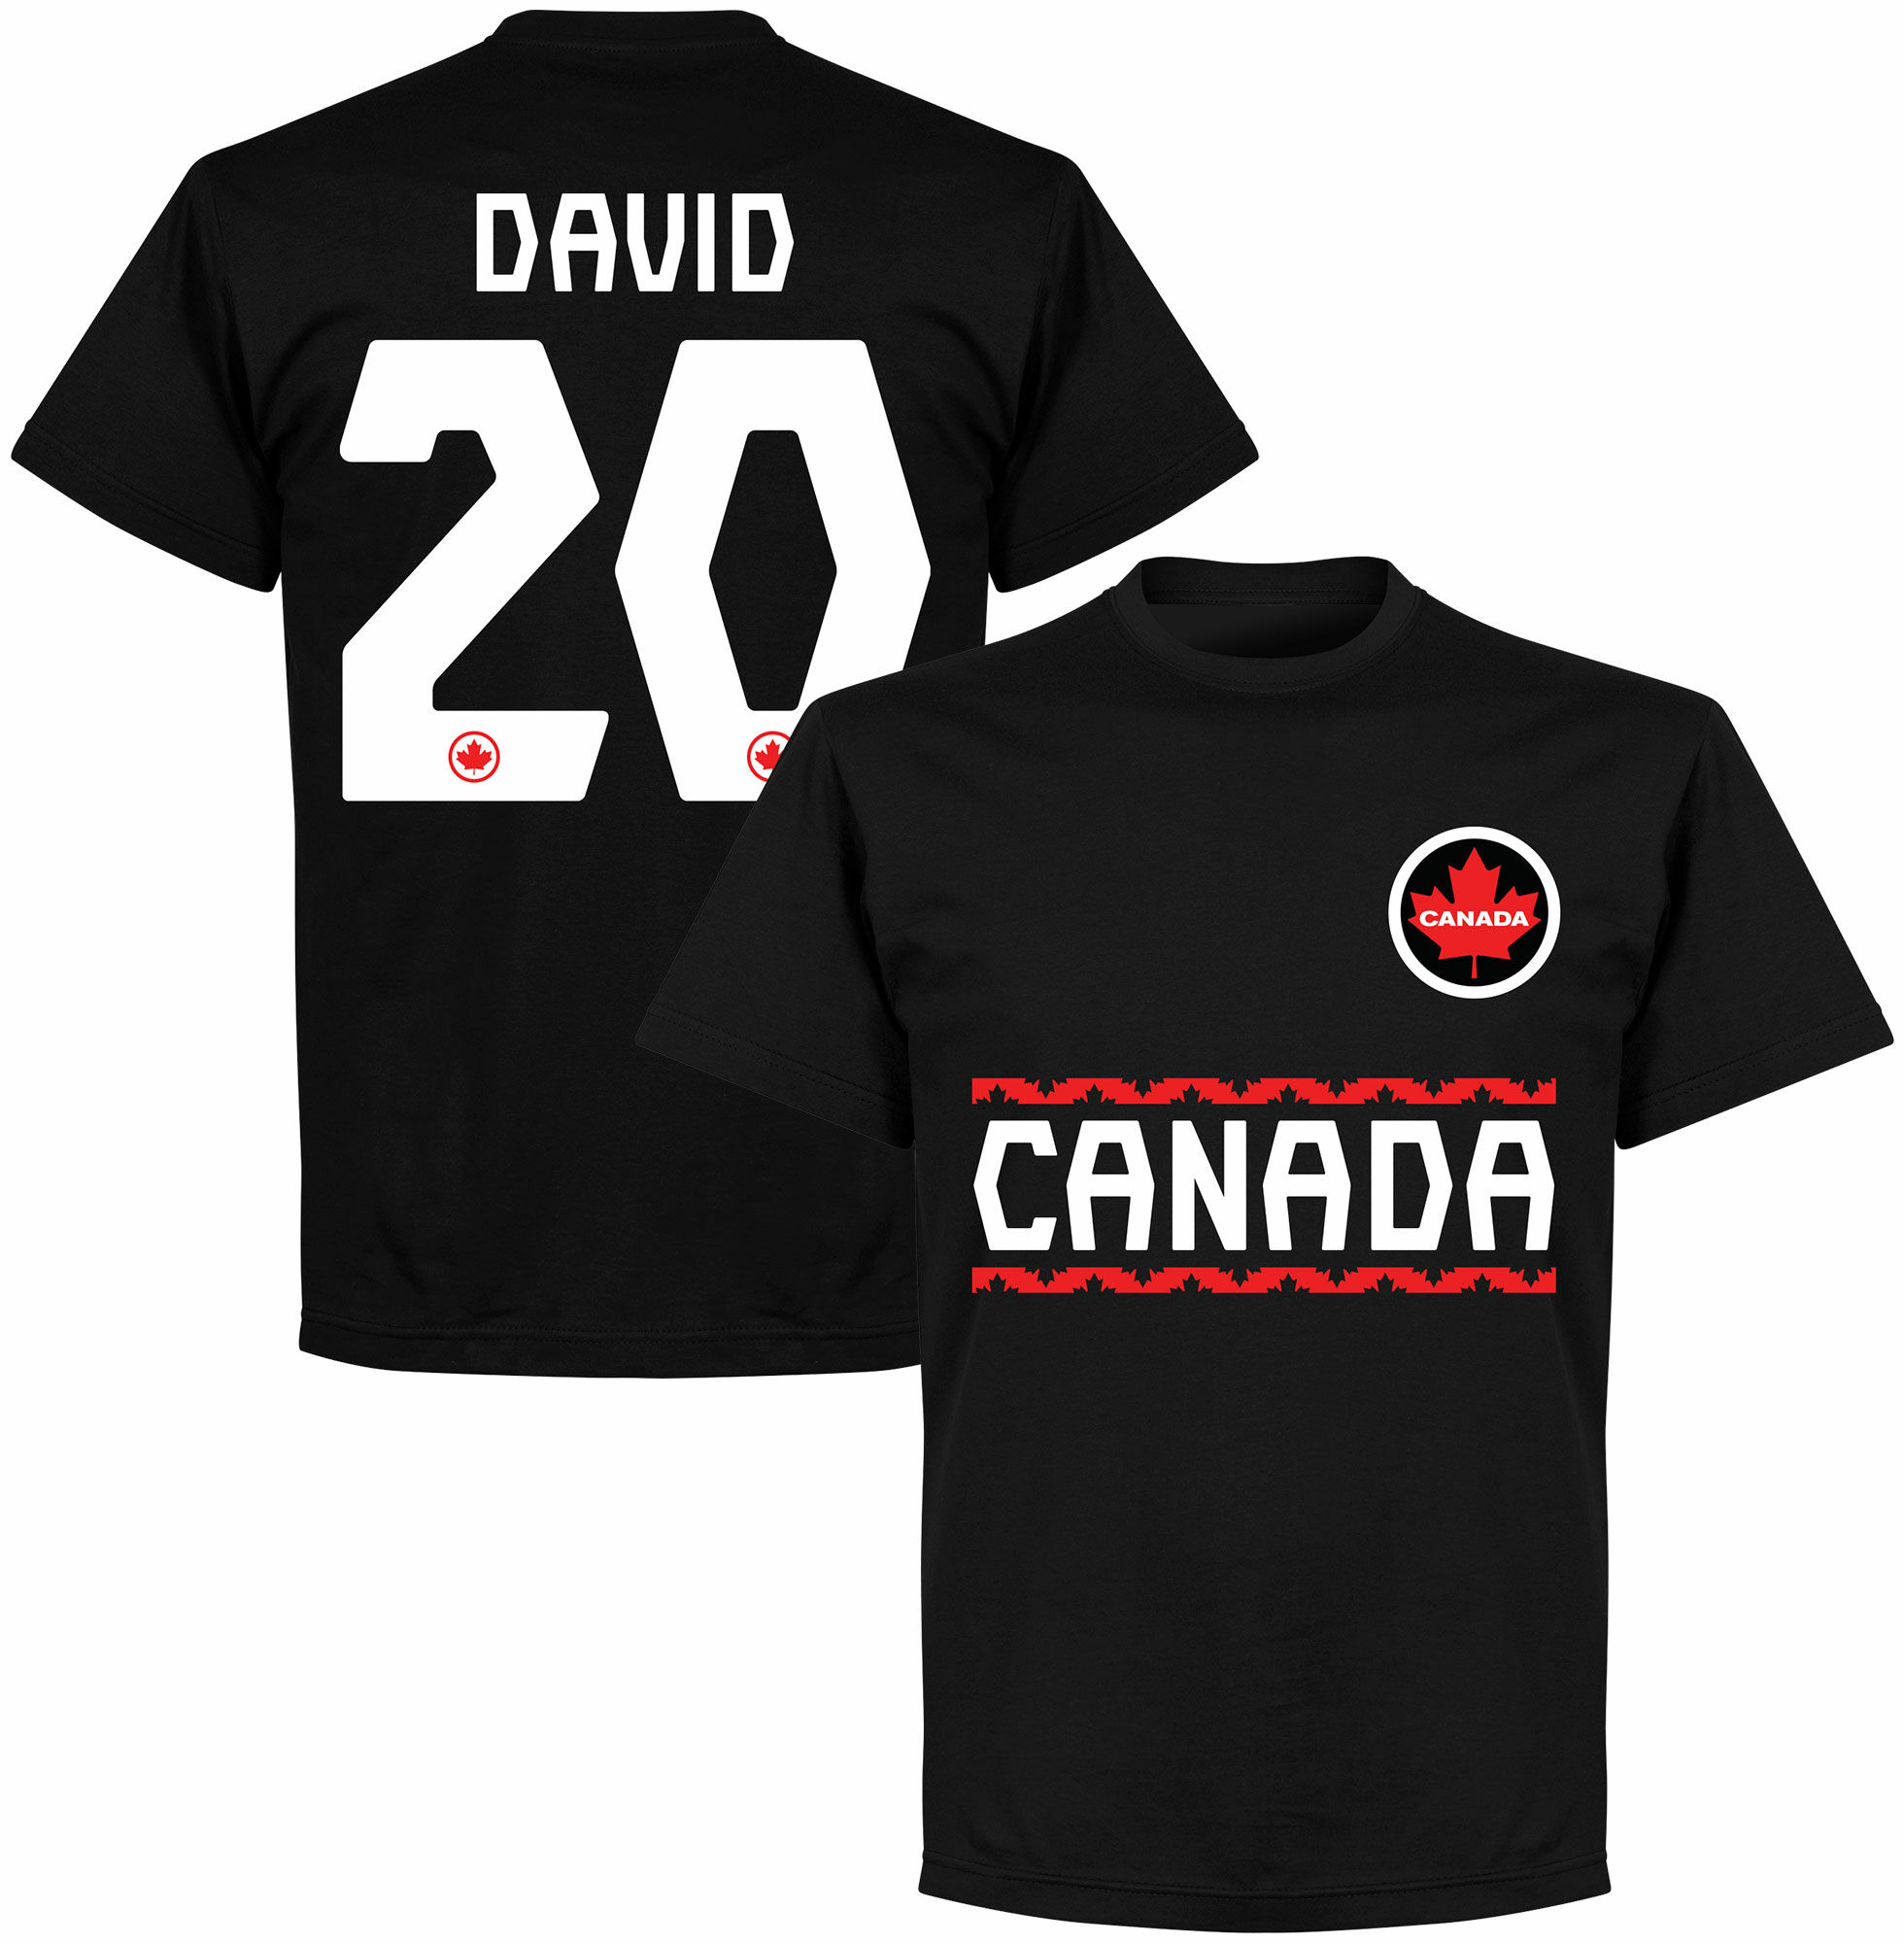 Kanada - Tričko - číslo 20, černé, Jonathan David